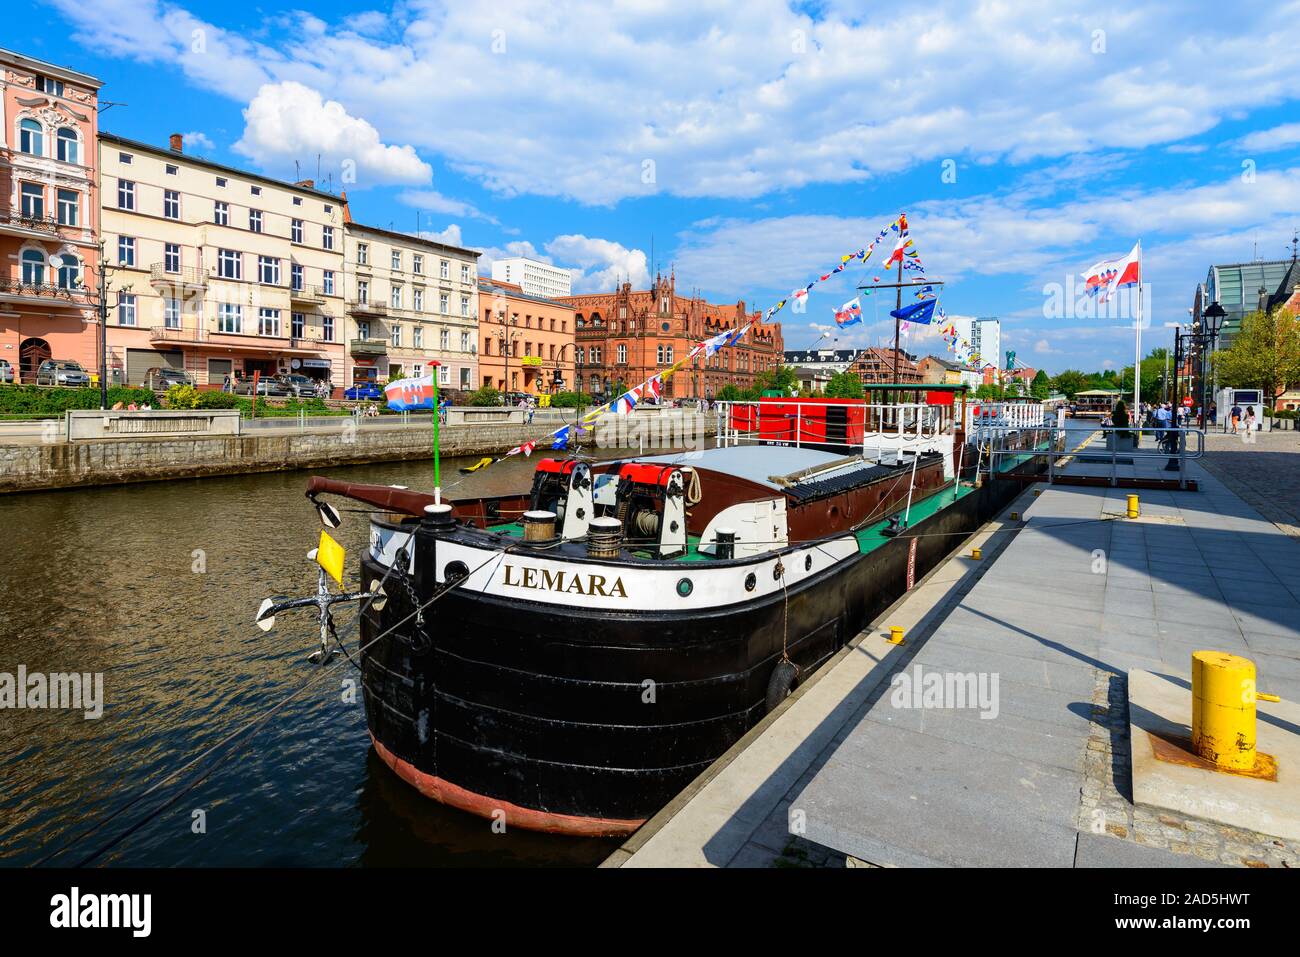 Bydgoszcz, Polen - 8. Mai 2016; Altstadt und Touristenboot - Kreuzfahrtschiff am Fluss Brda Stockfoto